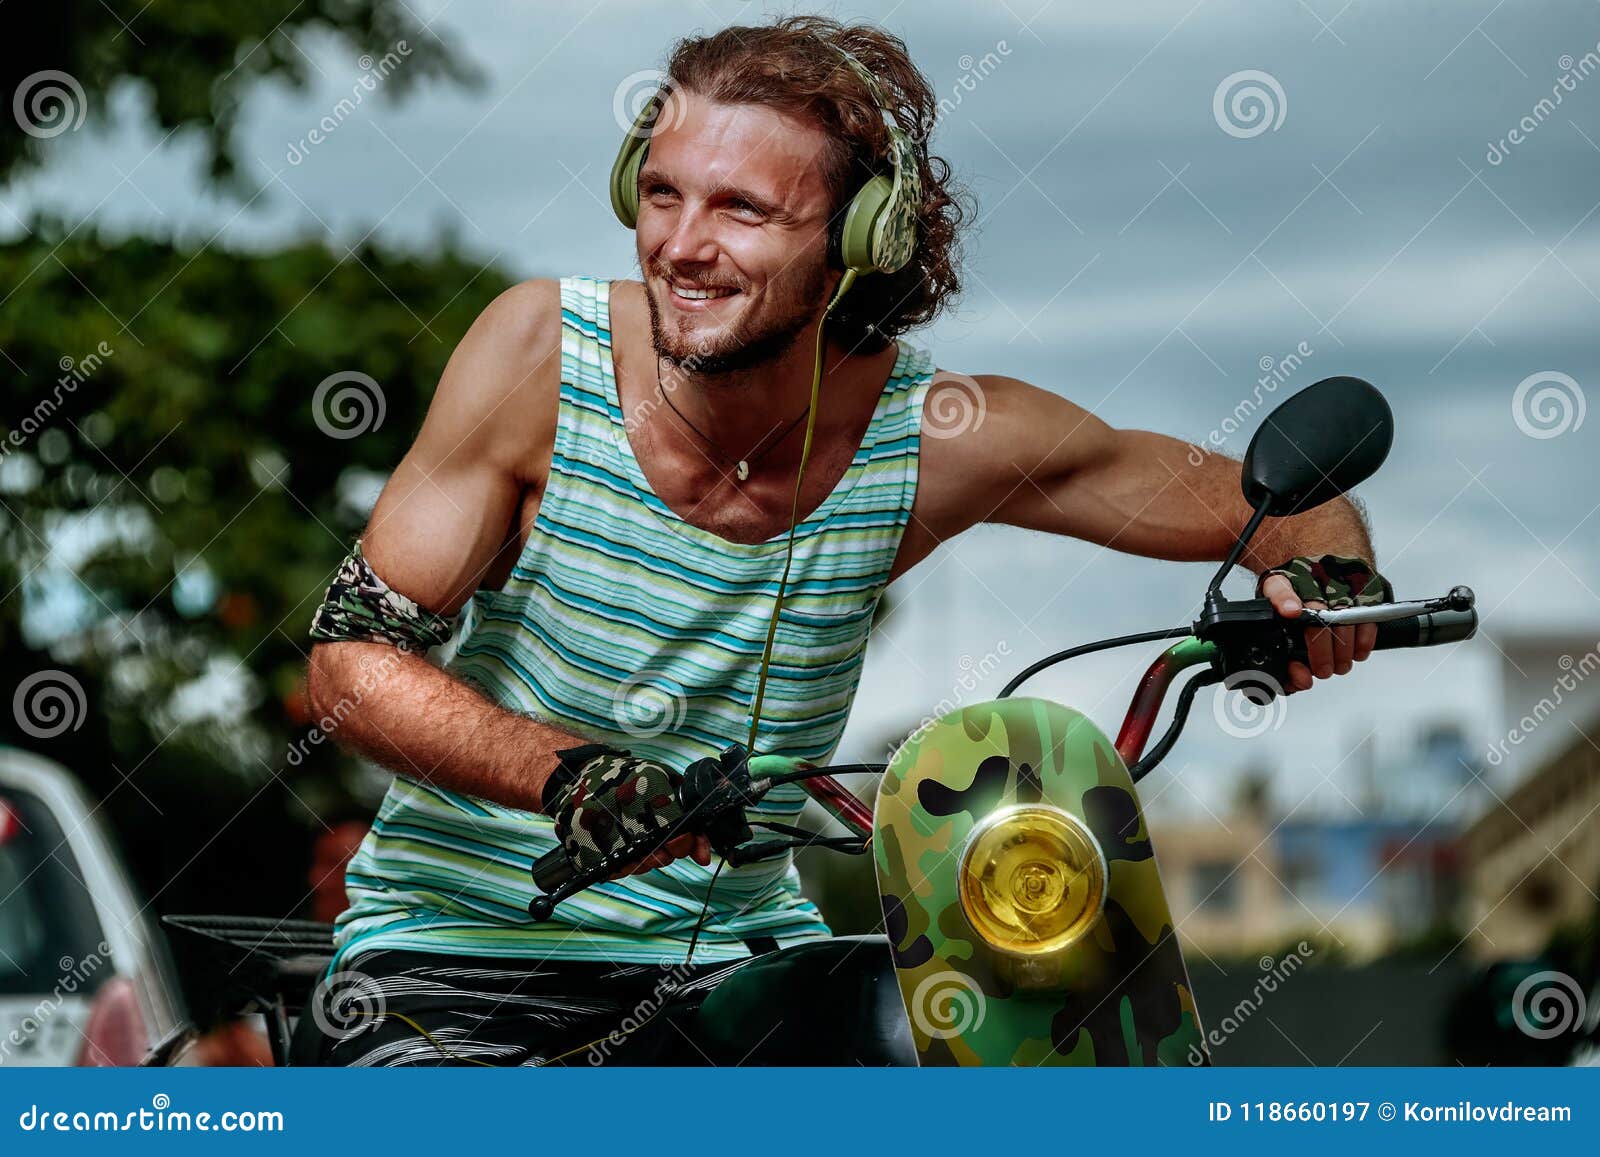 modern hipster on motobike